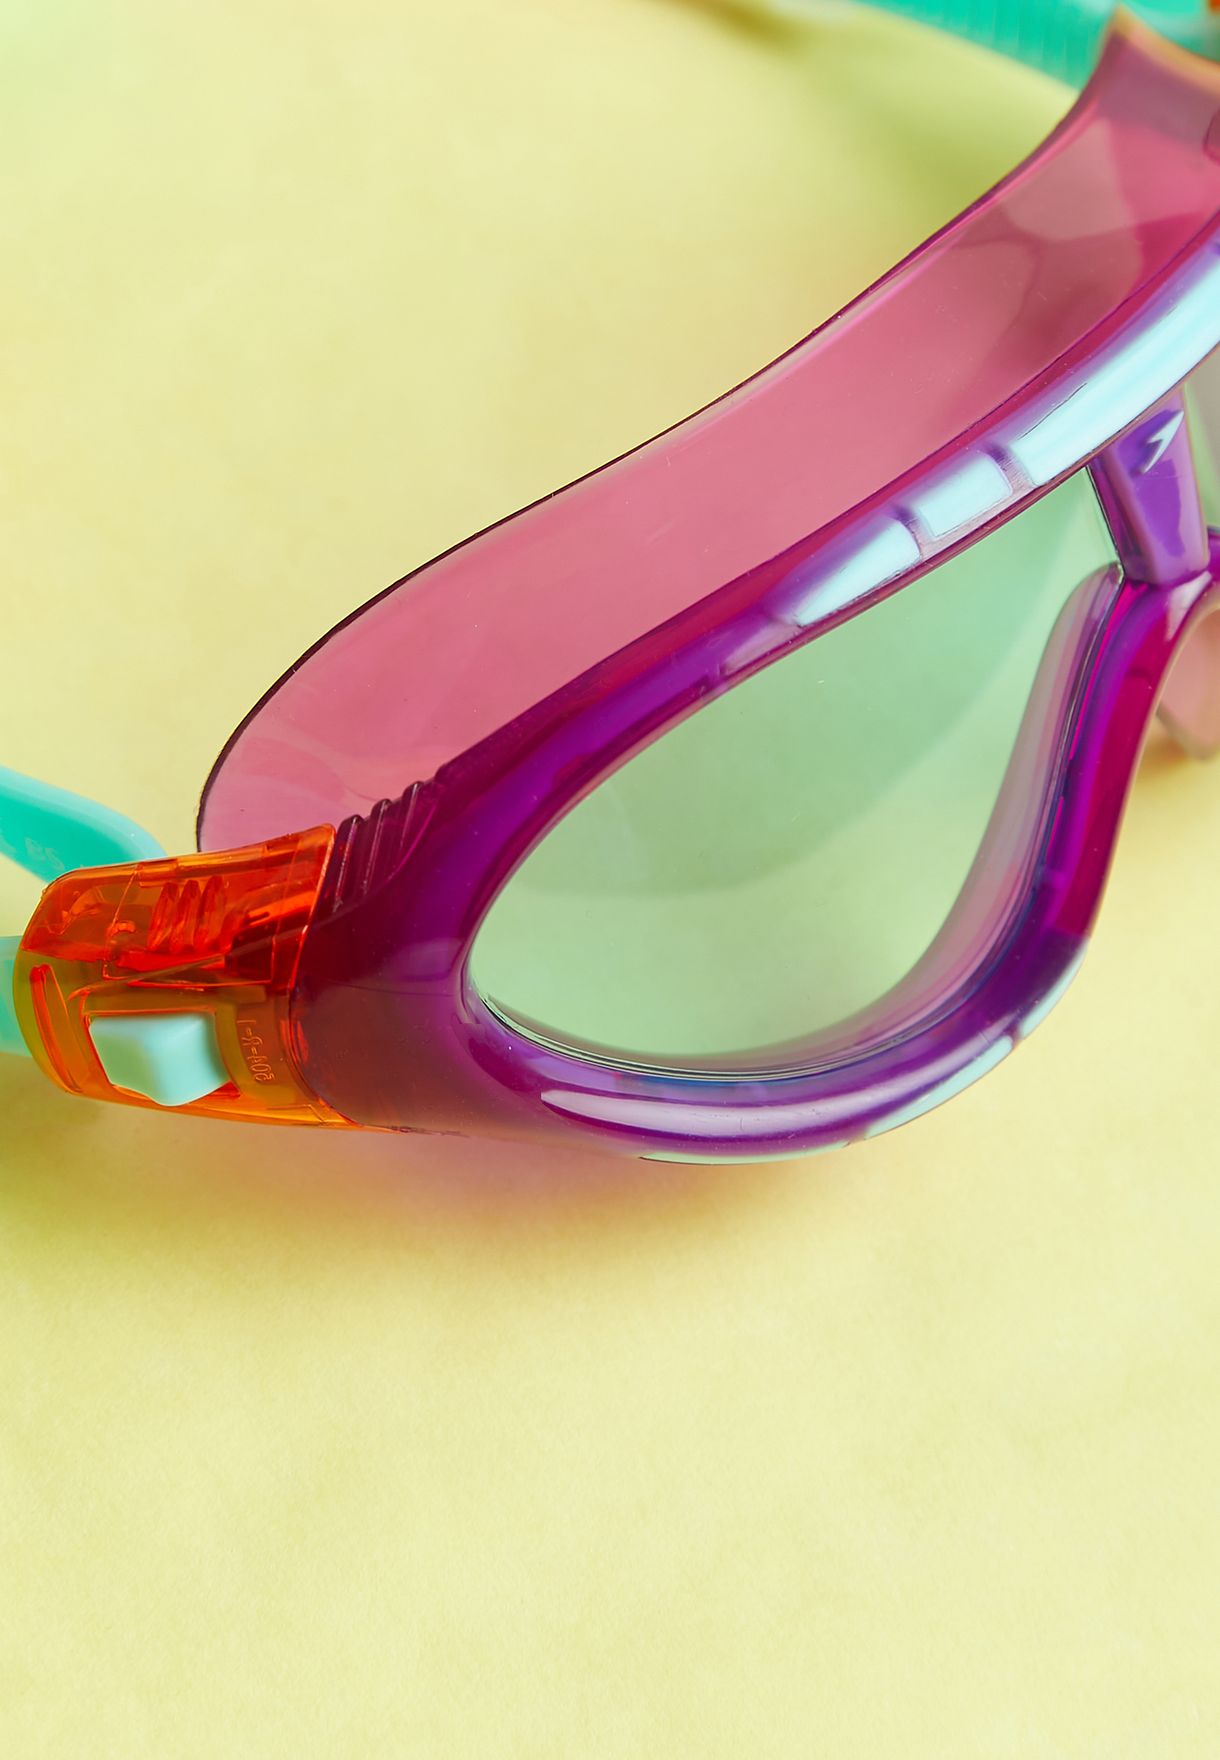 نظارات سباحة